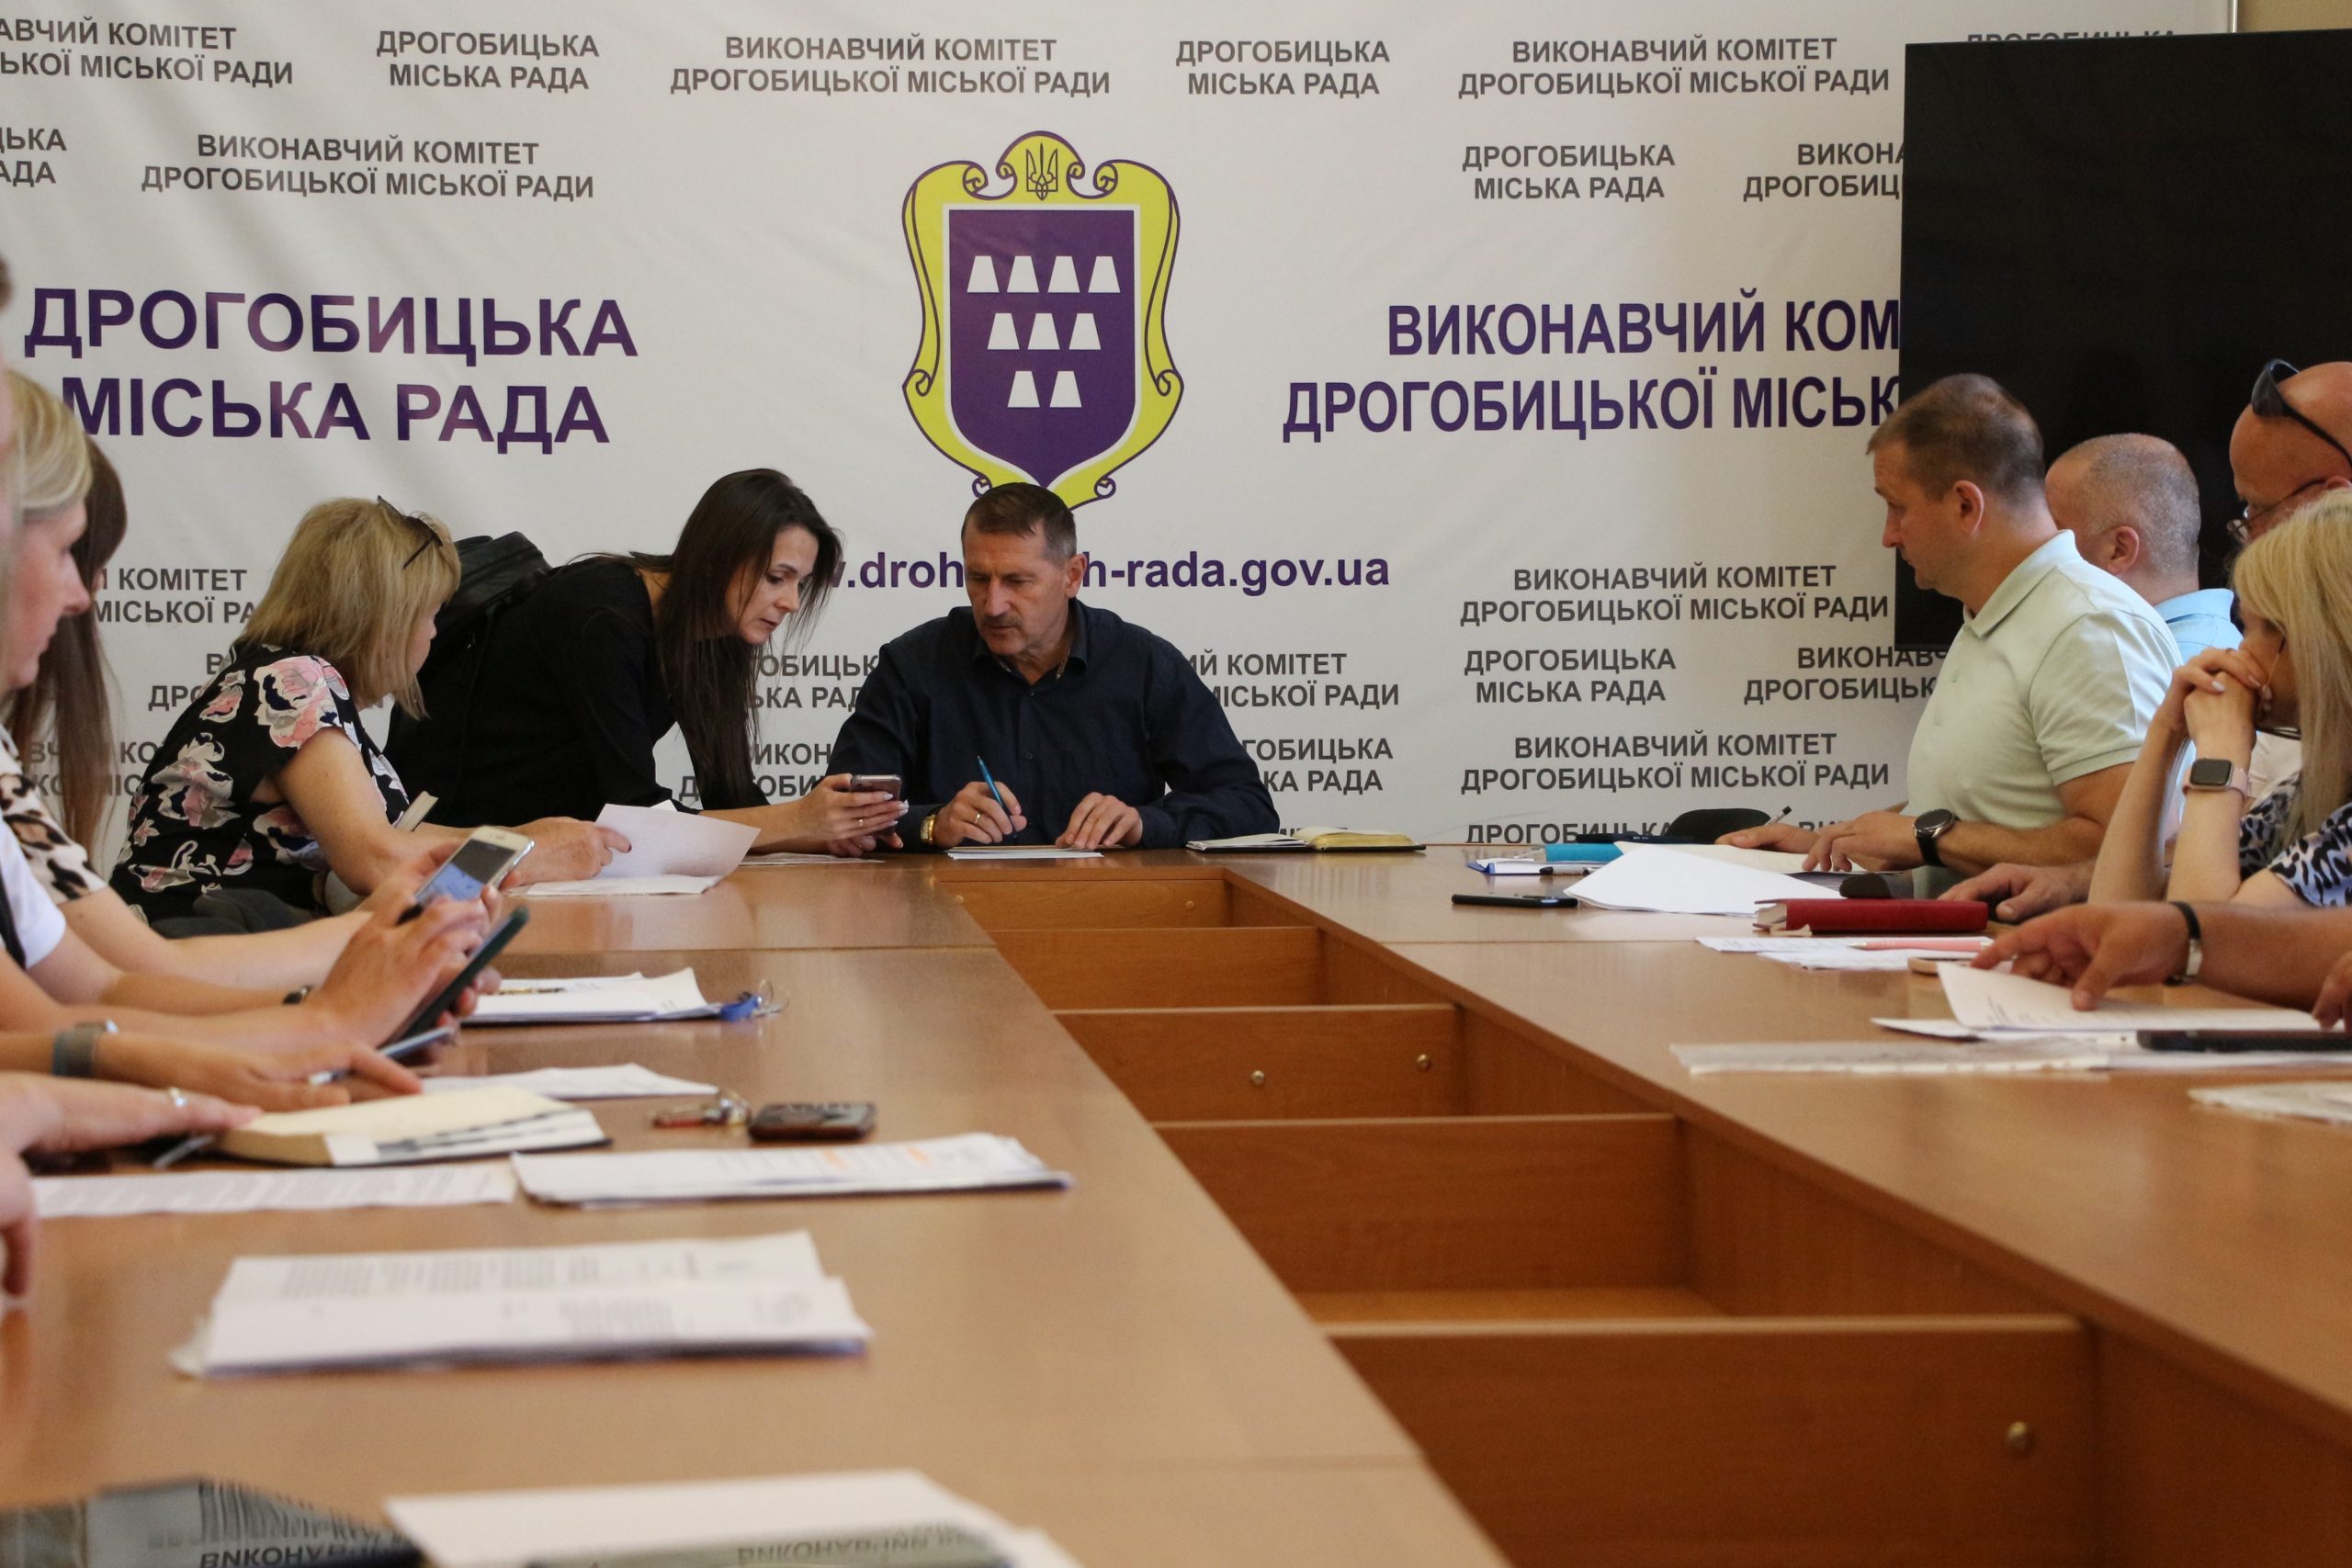 Міський голова Тарас Кучма провів прийом громадян: з якими питаннями звернулись мешканці громади?